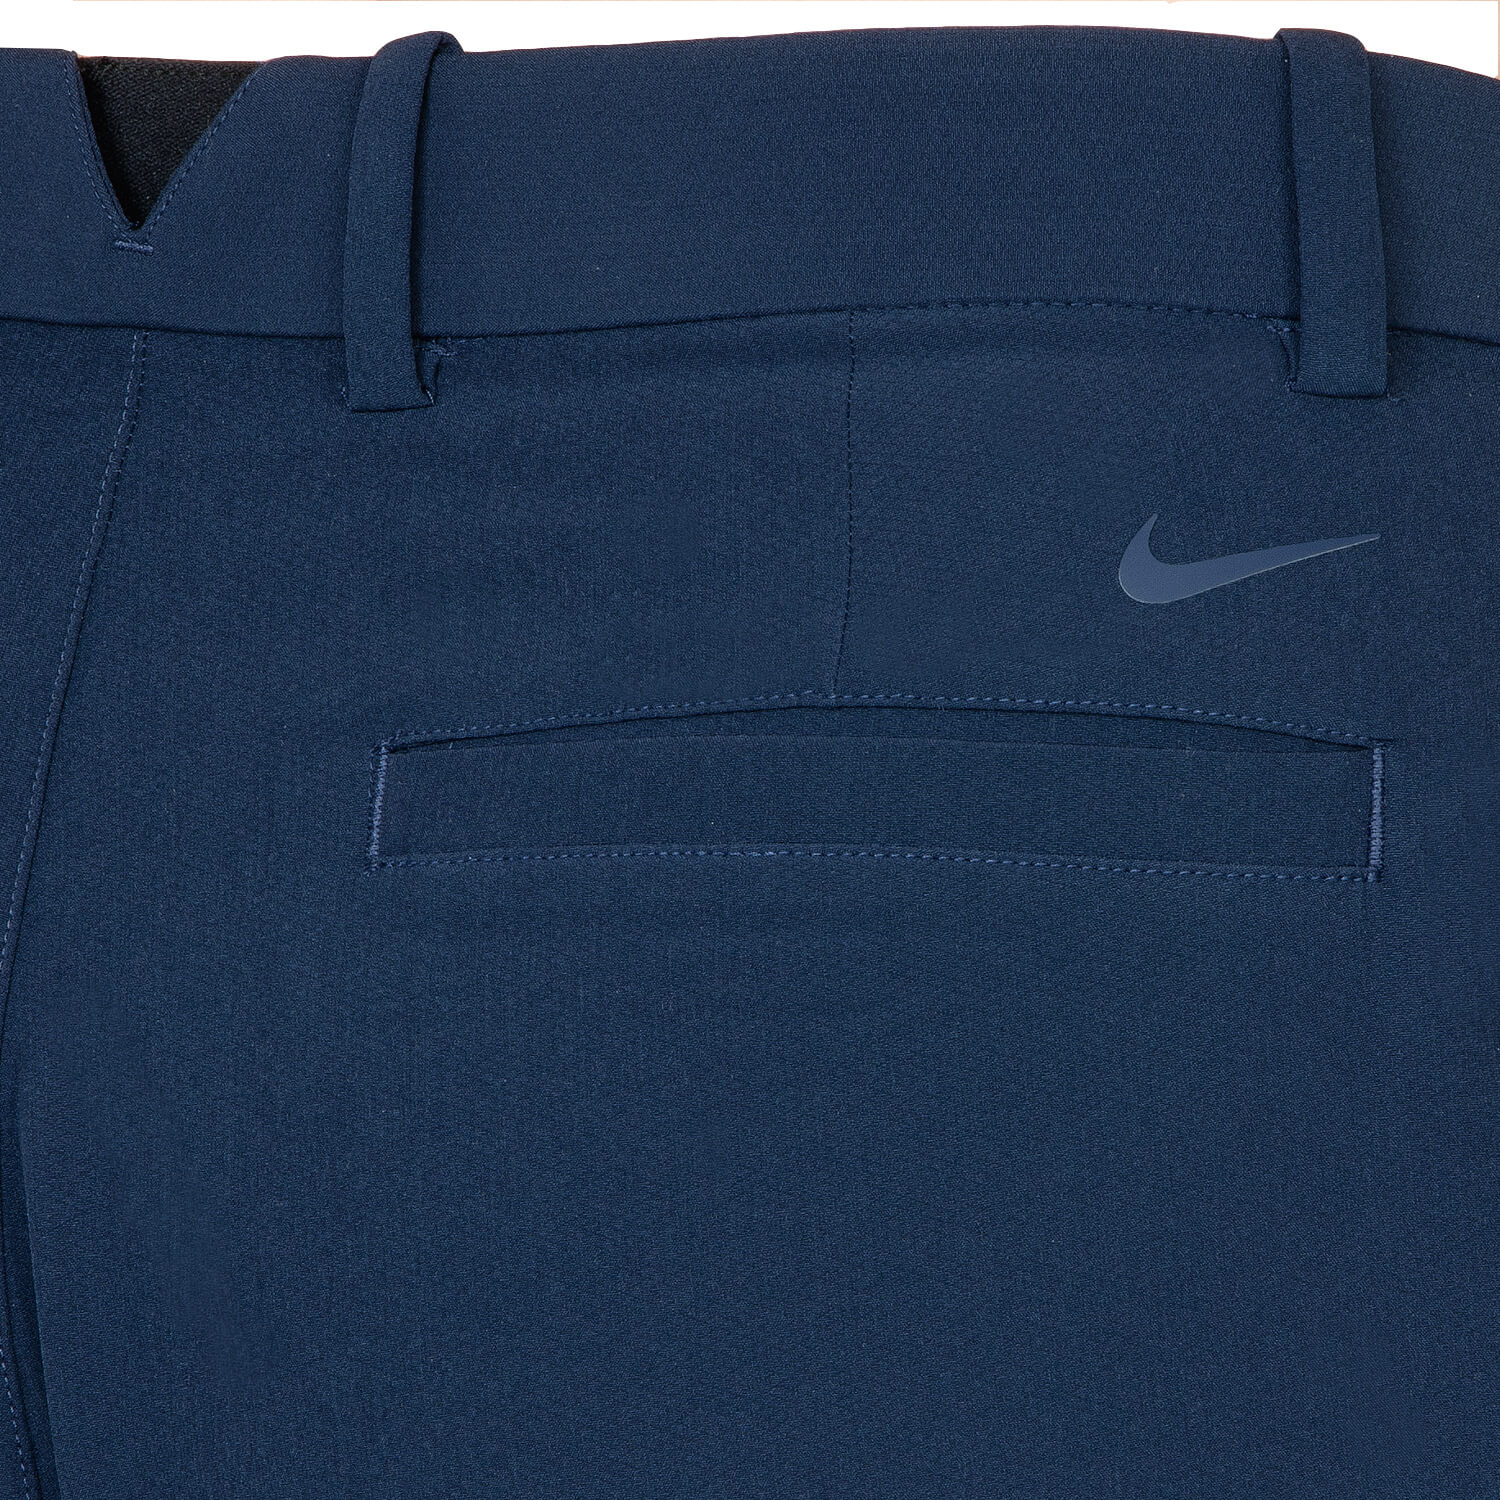 Nike Hybrid Golf Shorts Obsidian | Scottsdale Golf